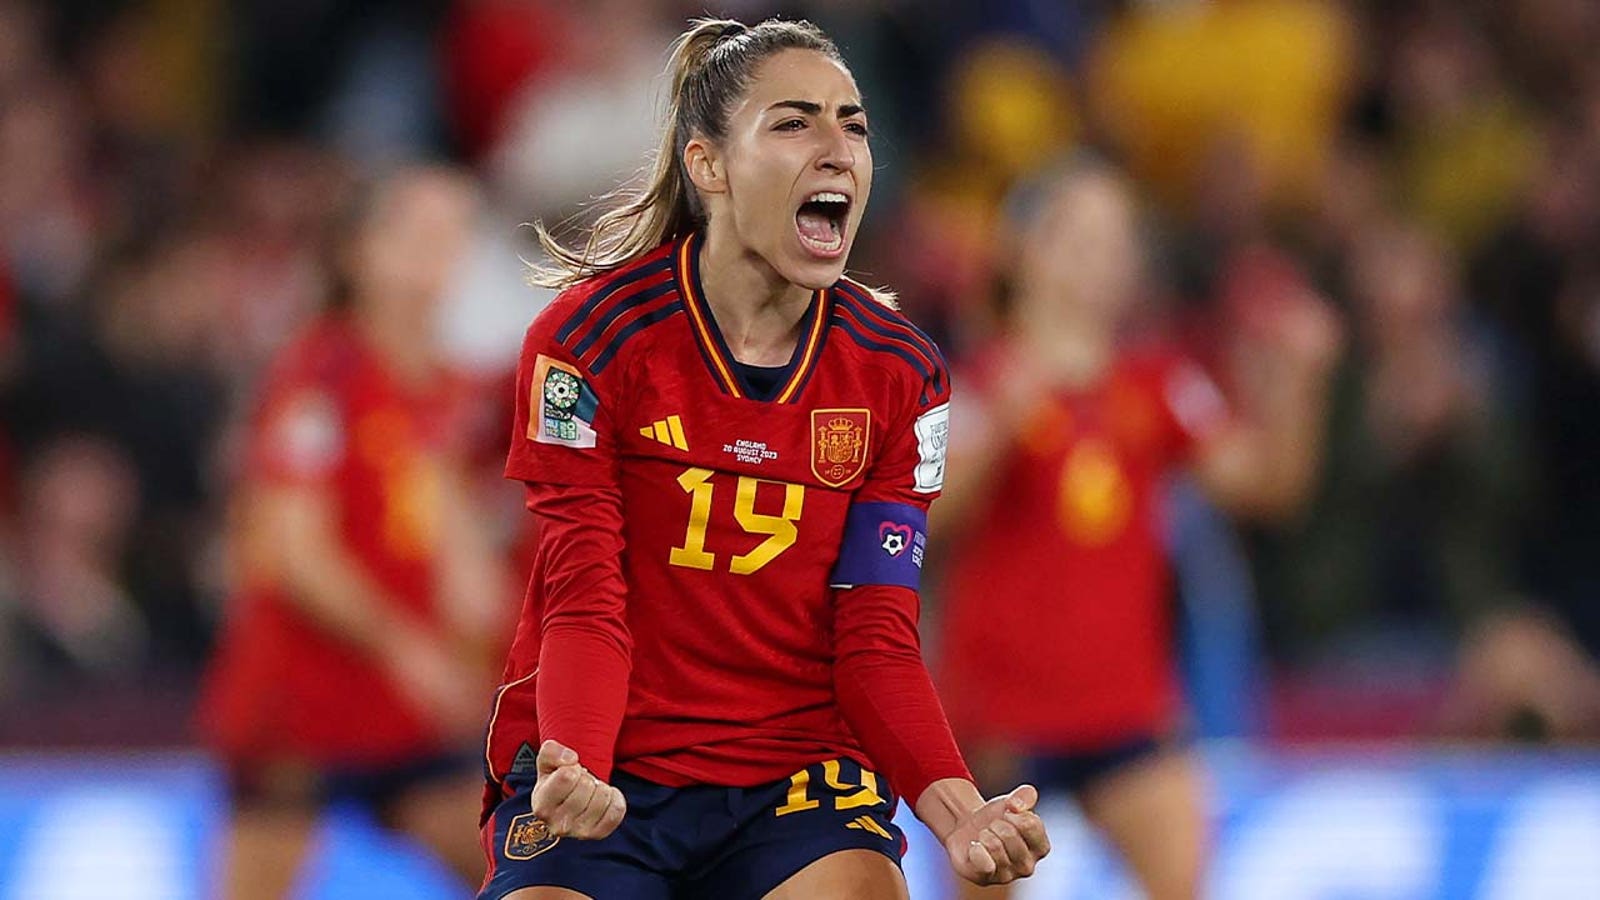 Spain's Olga Carmona scores goal vs. England in 29'